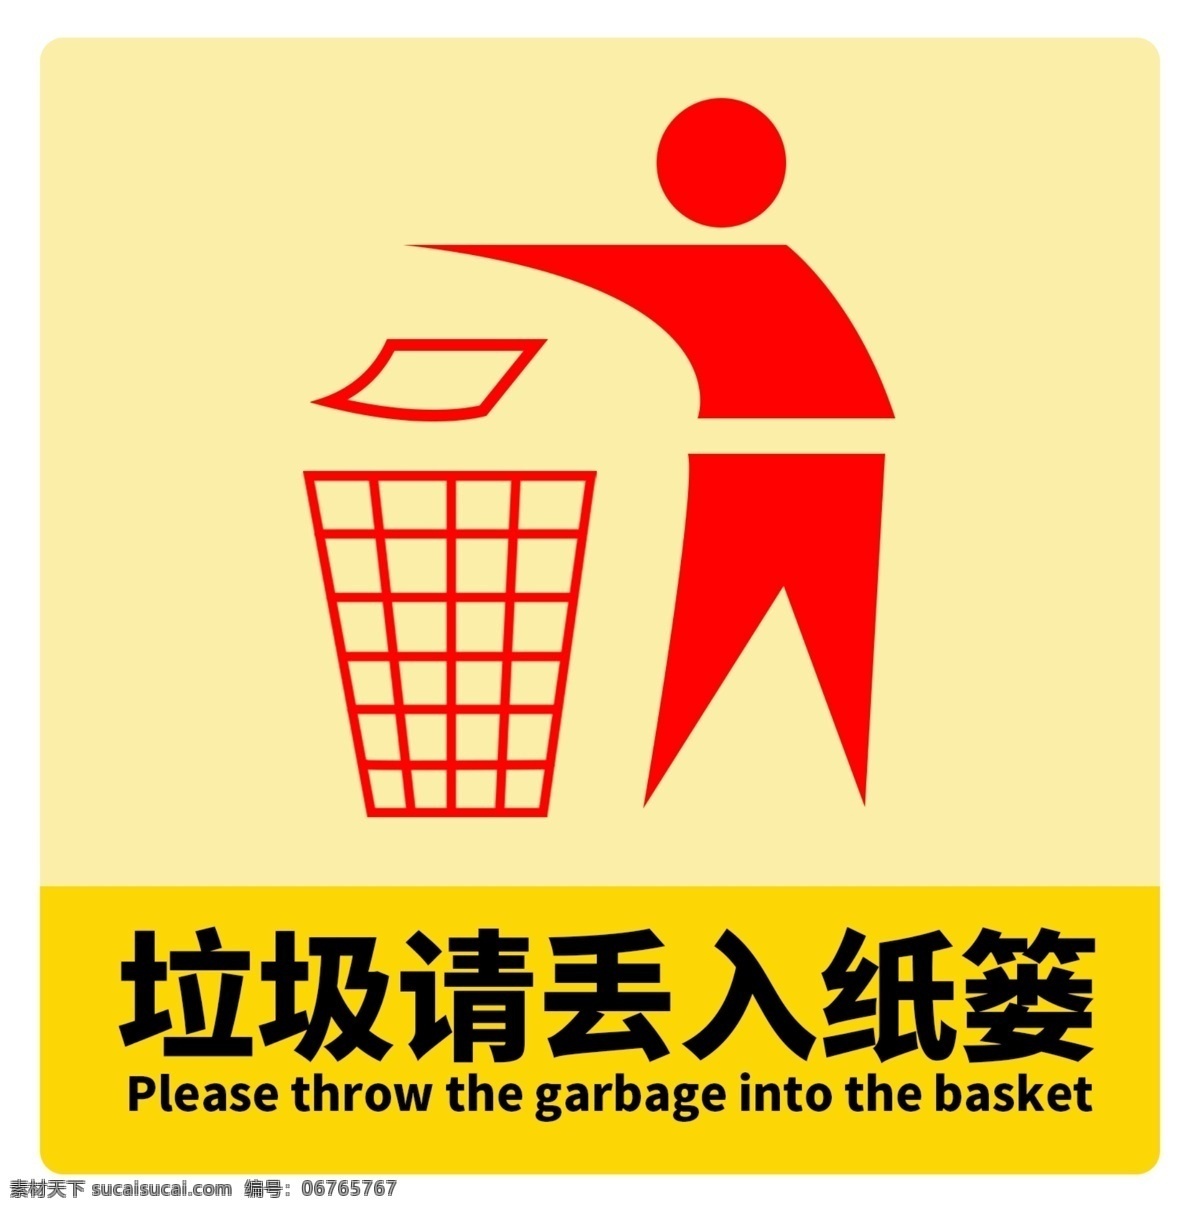 垃圾 请 丢 入 垃圾桶 内 垃圾请丢入 垃圾桶内 温馨提示 垃圾筒 公共标识标志 标识标志图标